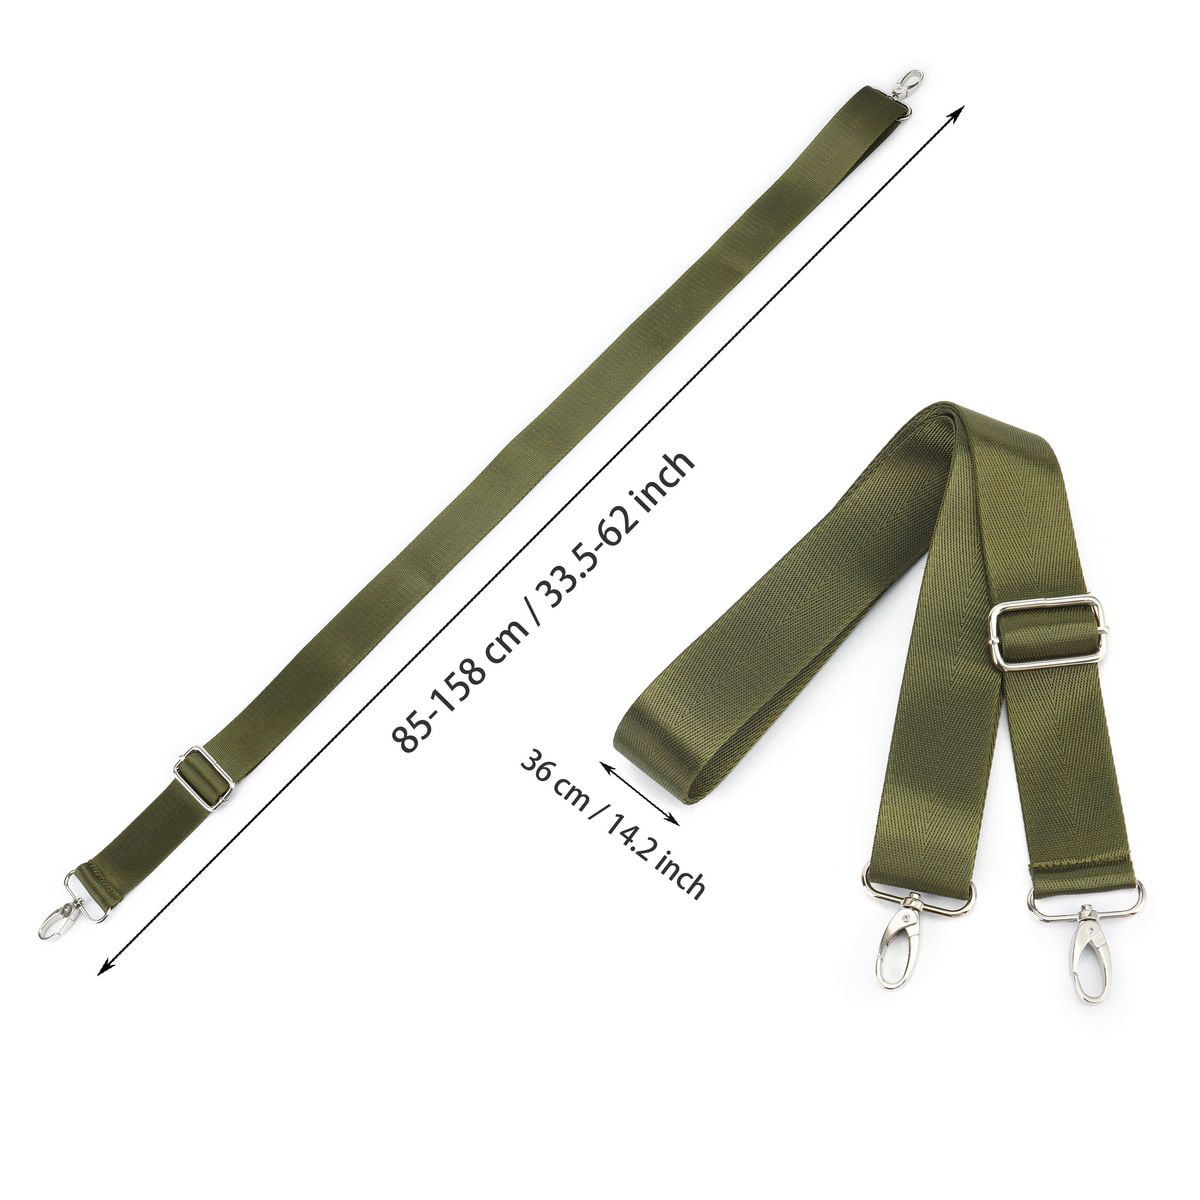 Smrinog Adjustable Bag Straps Nylon Wide Shoulder Belt Replacement Handbag Purse  Straps 